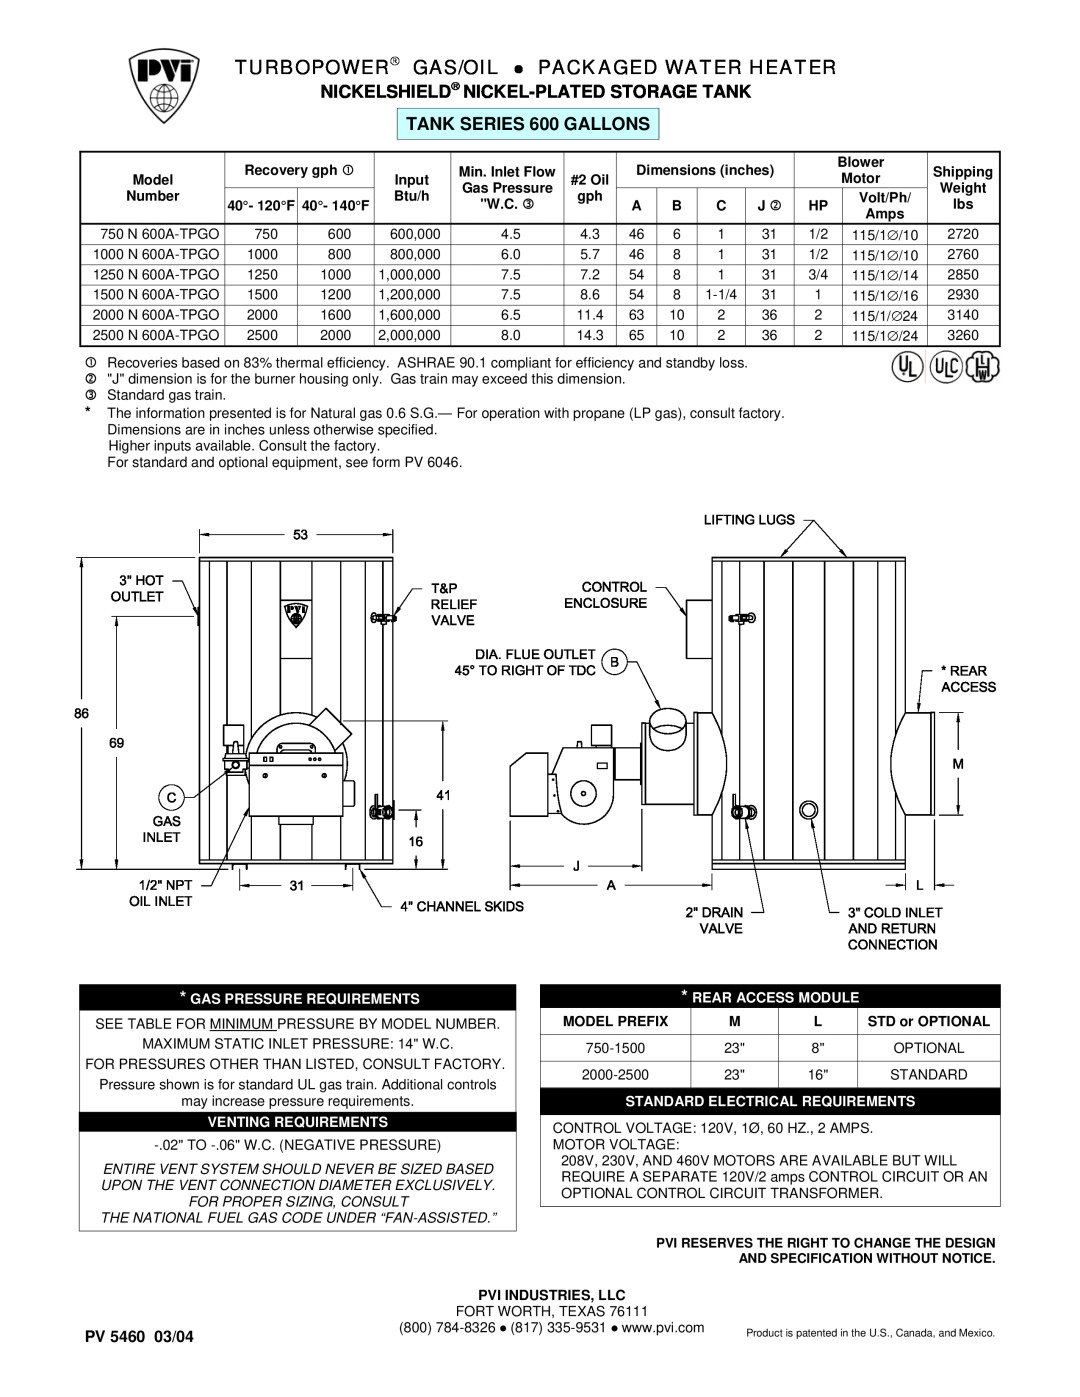 PVI Industries 2000N600A-TPO dimensions Turbopower Gas/Oil, Packaged Water Heater, Nickelshield Nickel-Platedstorage Tank 